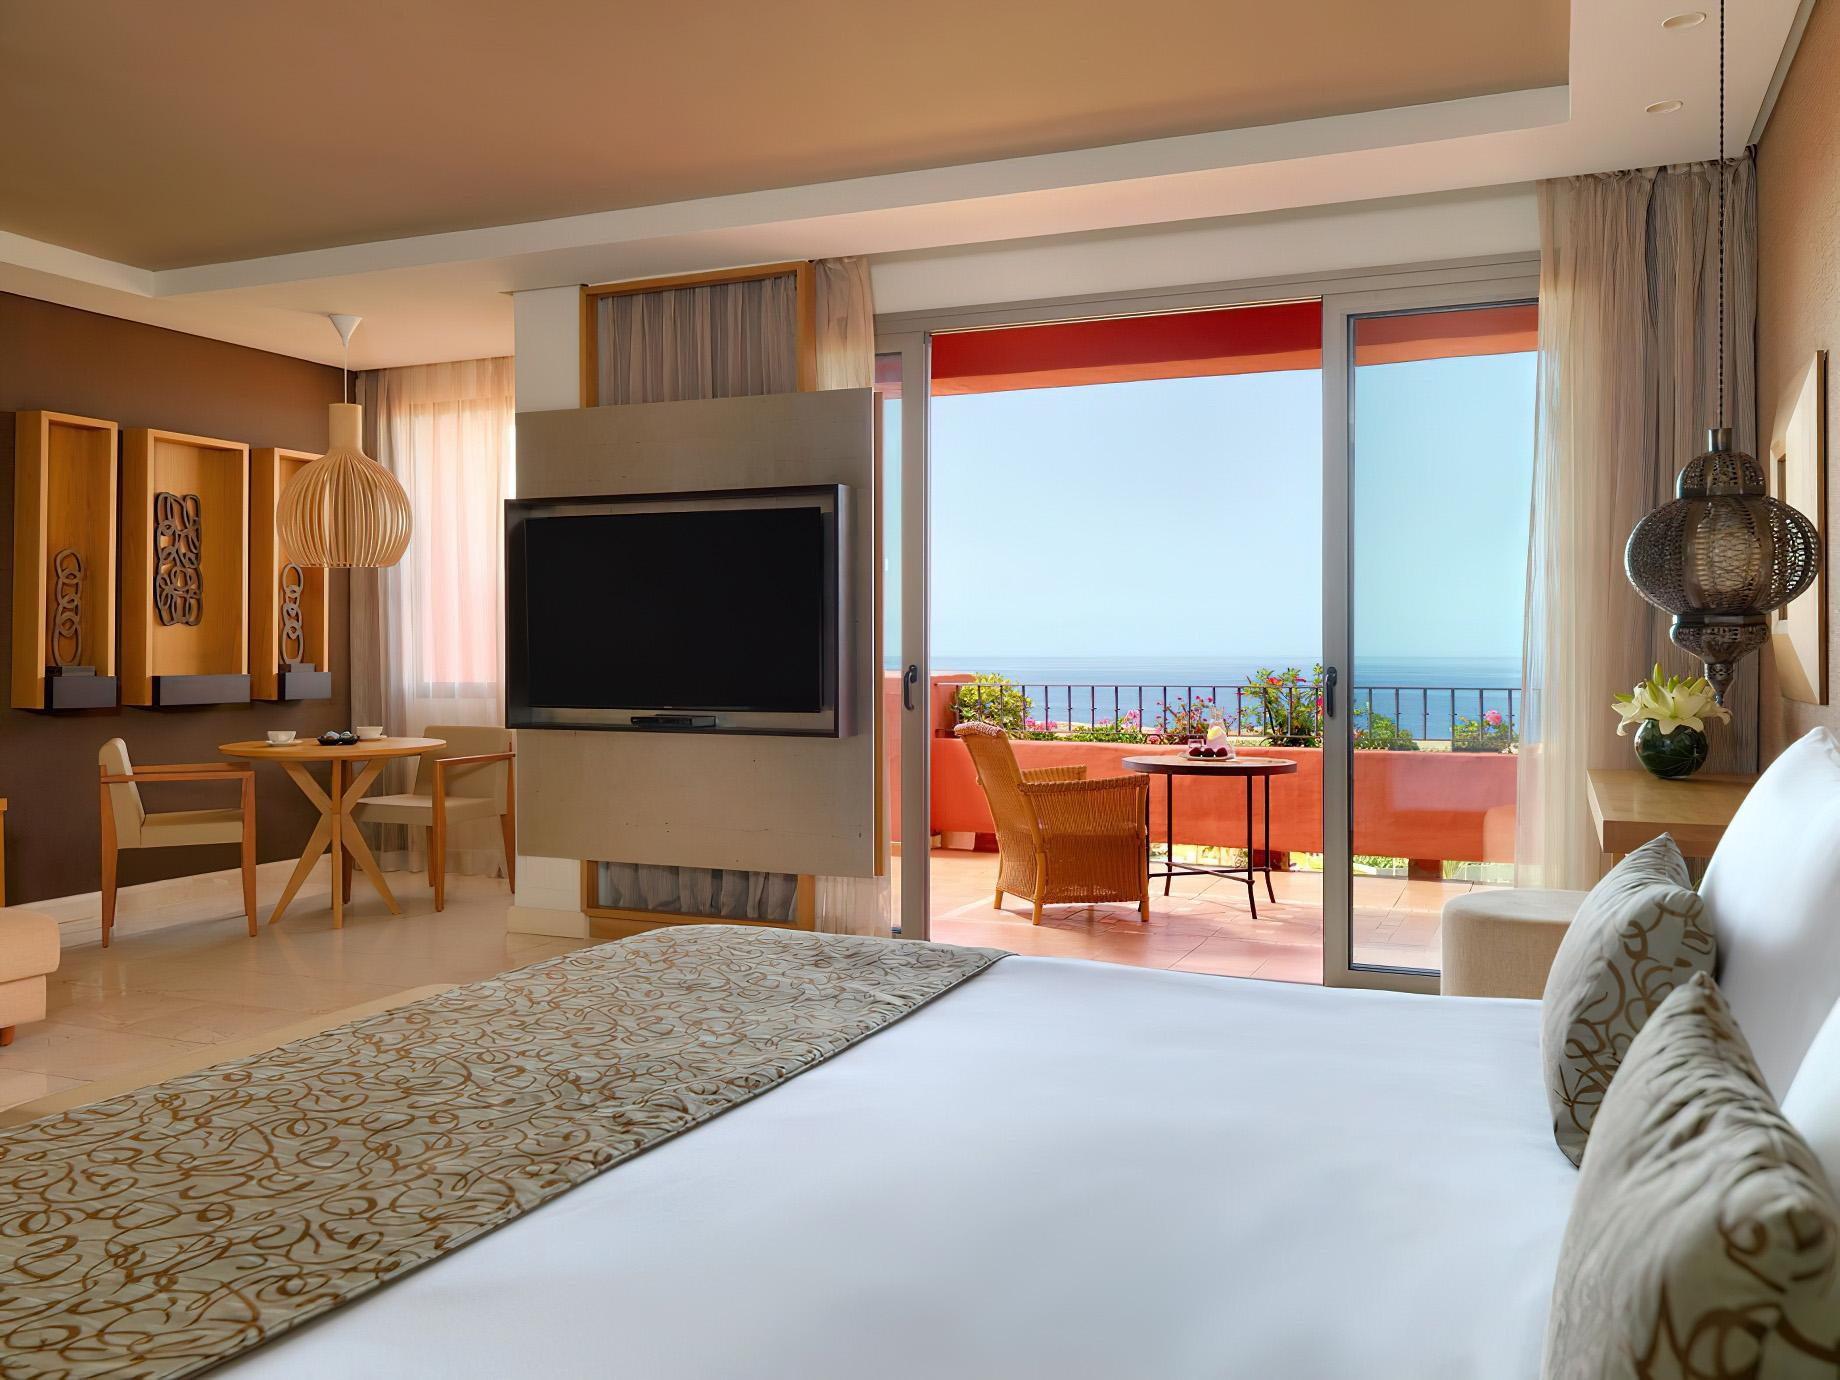 The Ritz-Carlton, Abama Resort - Santa Cruz de Tenerife, Spain - Citadel Junior Suite Bedroom